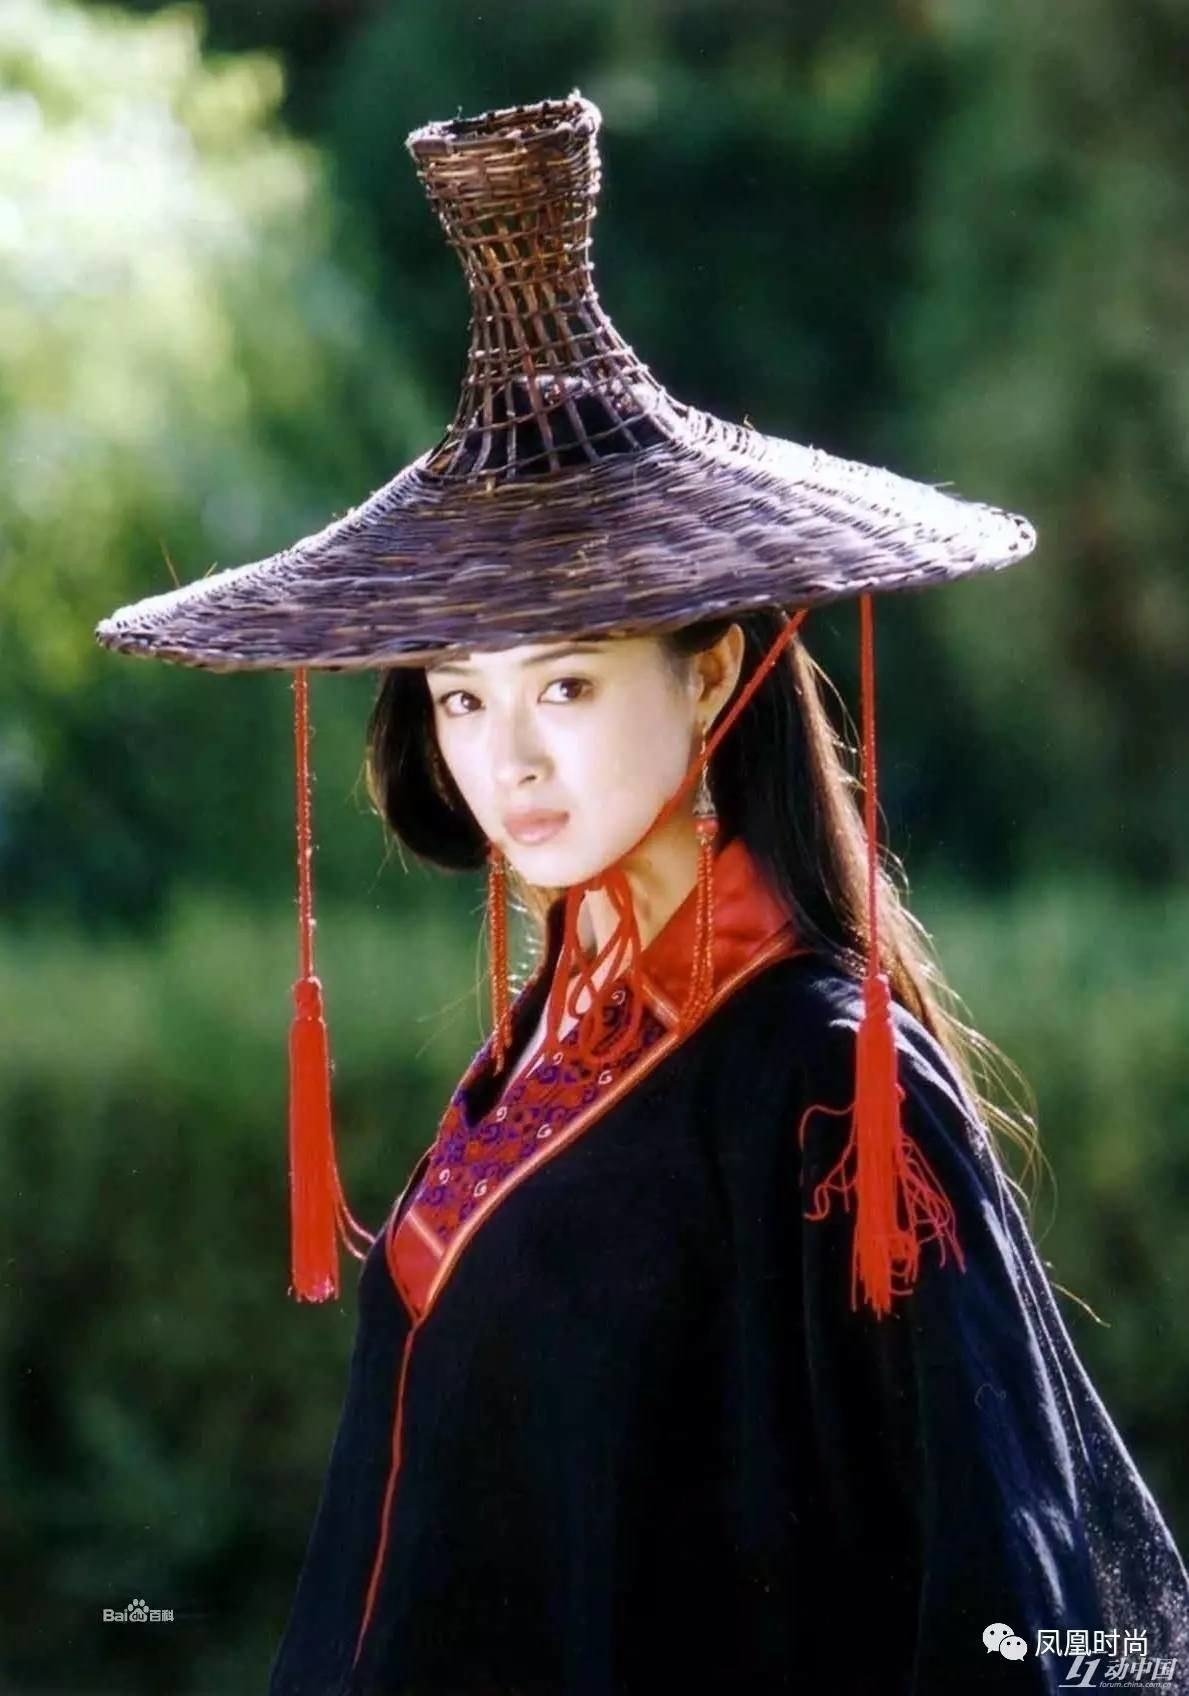 Mê mẩn trước vẻ đẹp mơ màng của mỹ nhân Hoa ngữ với nón tre